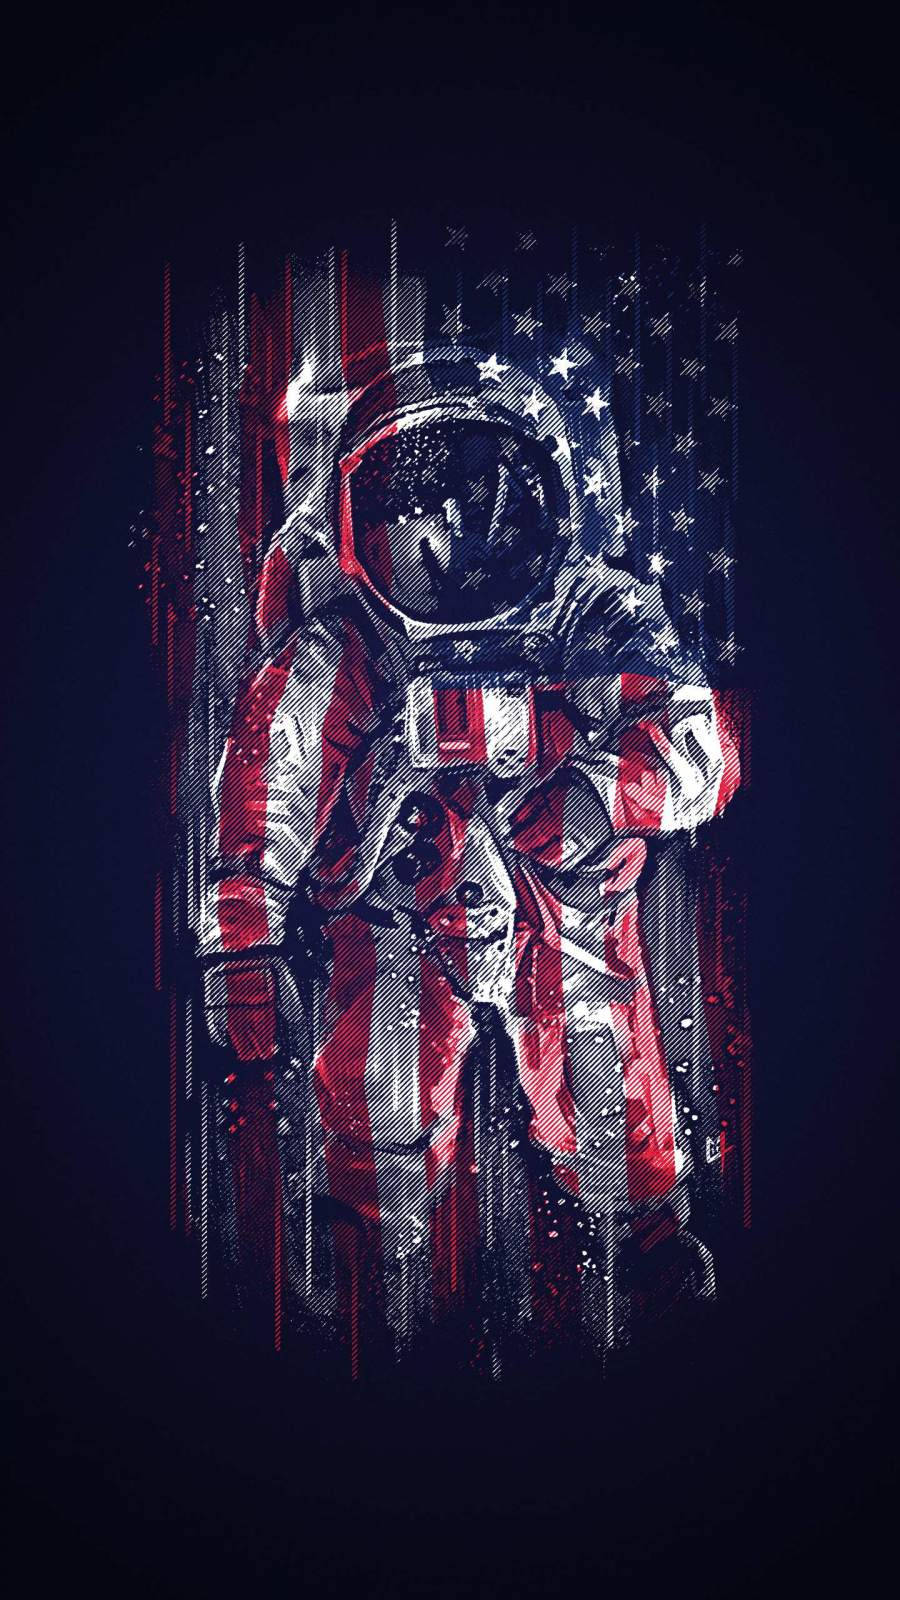 Astronautafrente A La Bandera De Estados Unidos En Iphone. Fondo de pantalla